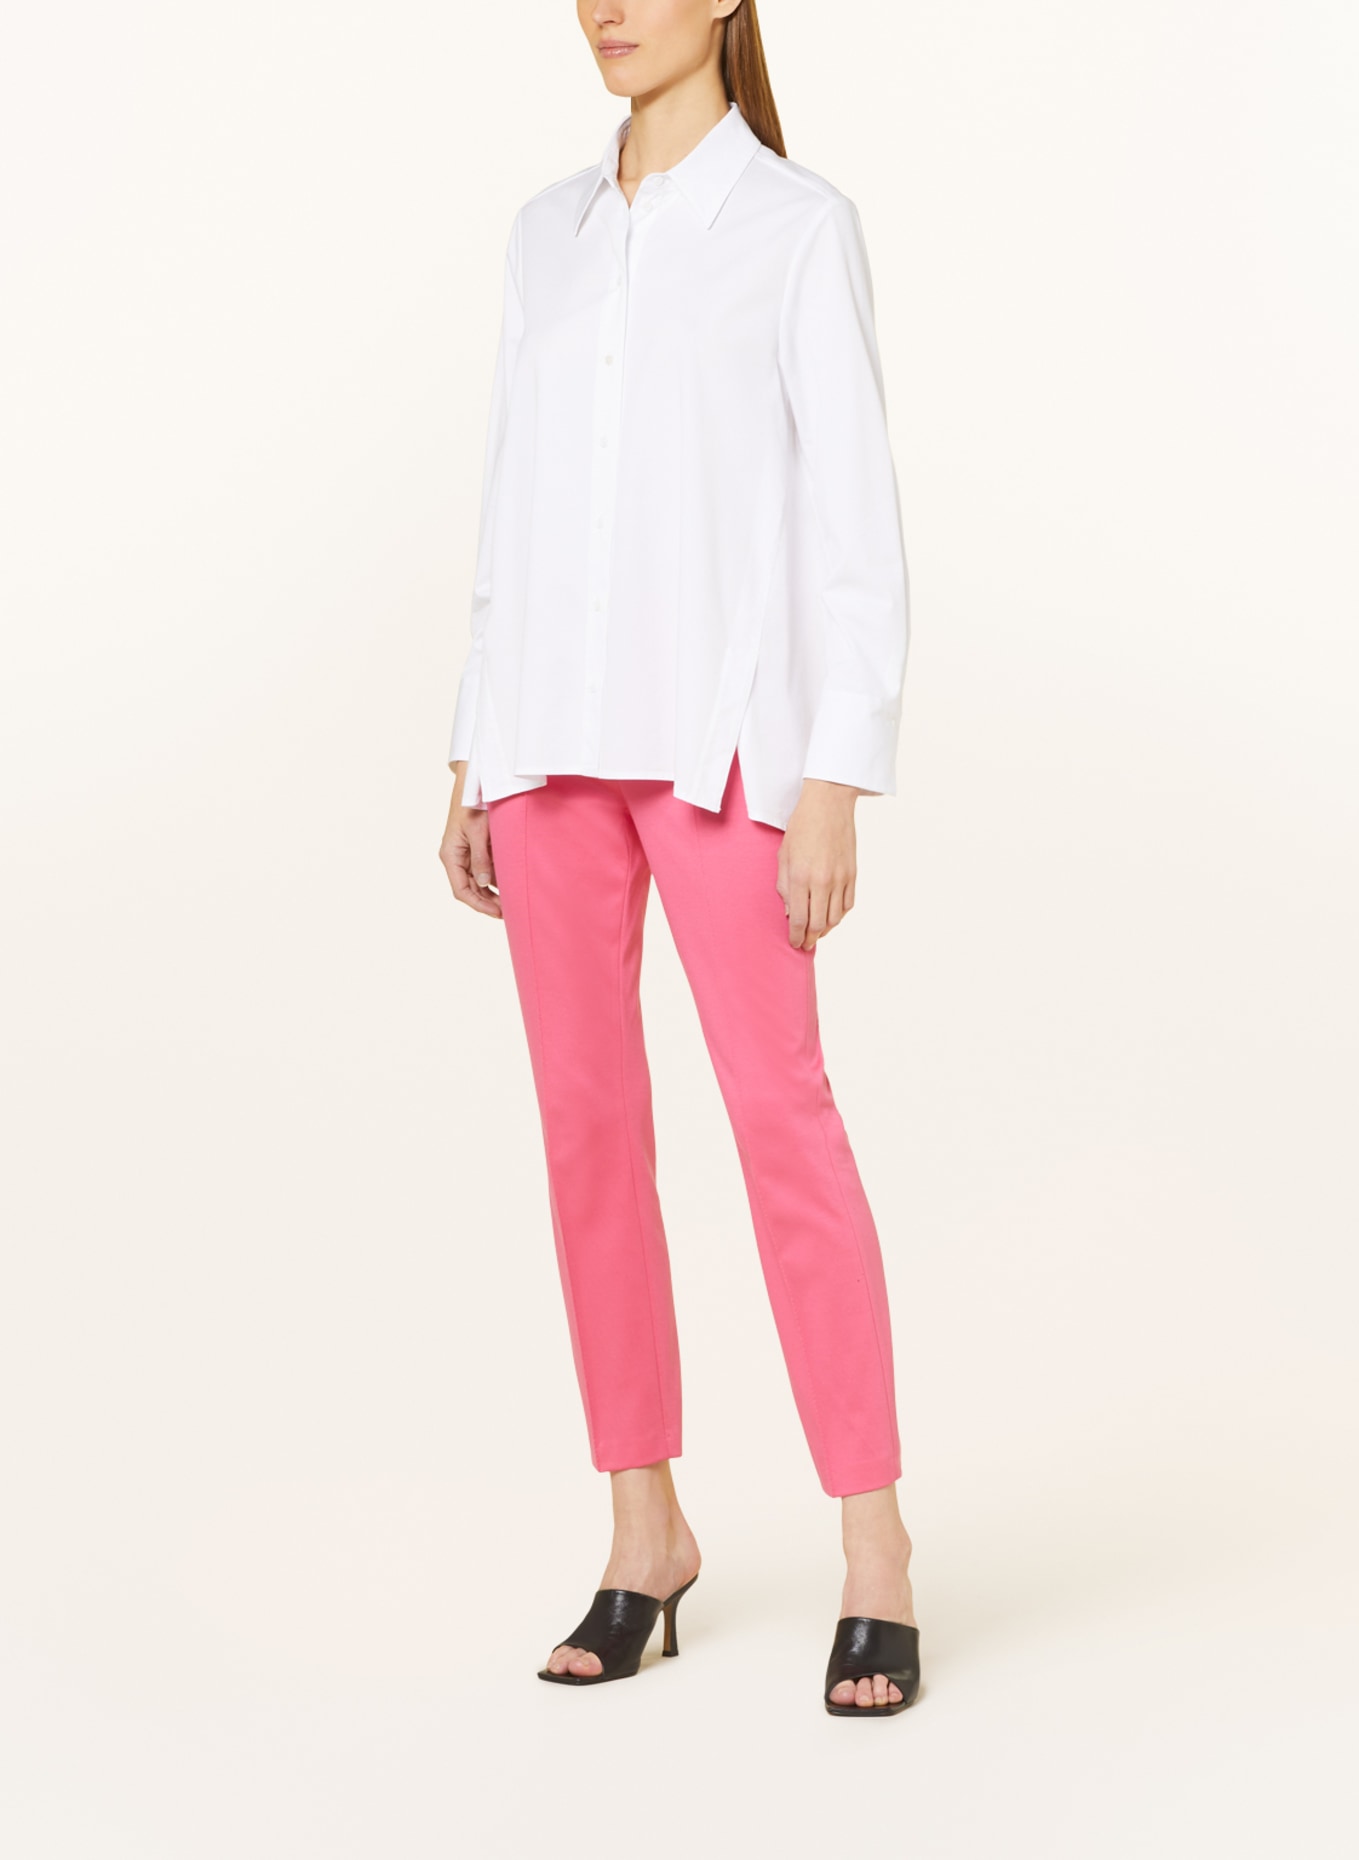 MARC CAIN Shirt blouse, Color: WHITE (Image 2)